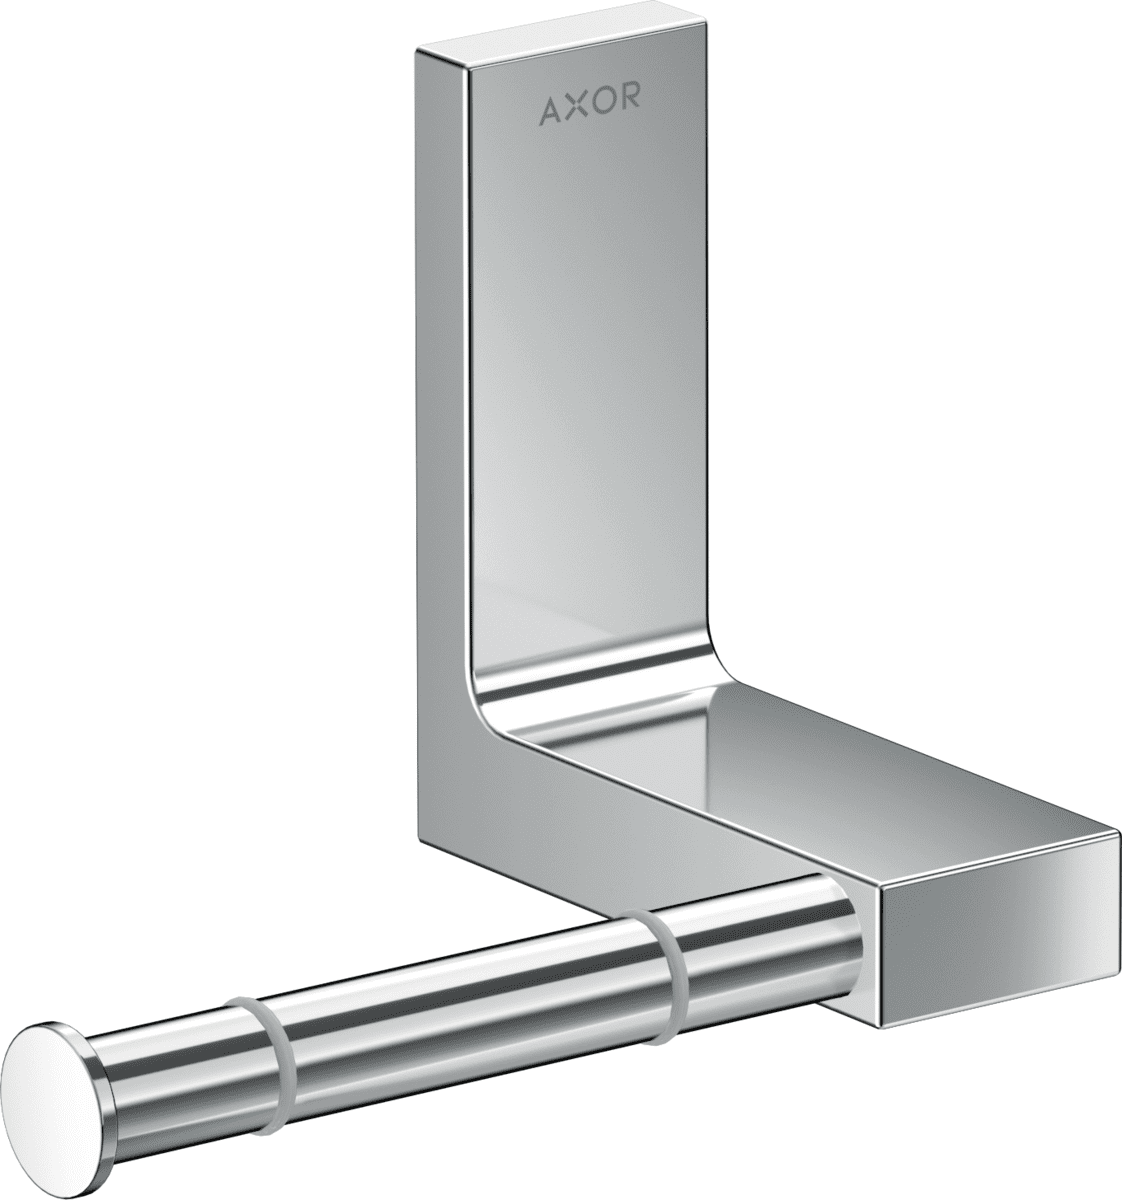 Obrázek HANSGROHE AXOR Universal Rectangular držák na toaletní papír #42656000 - chrom